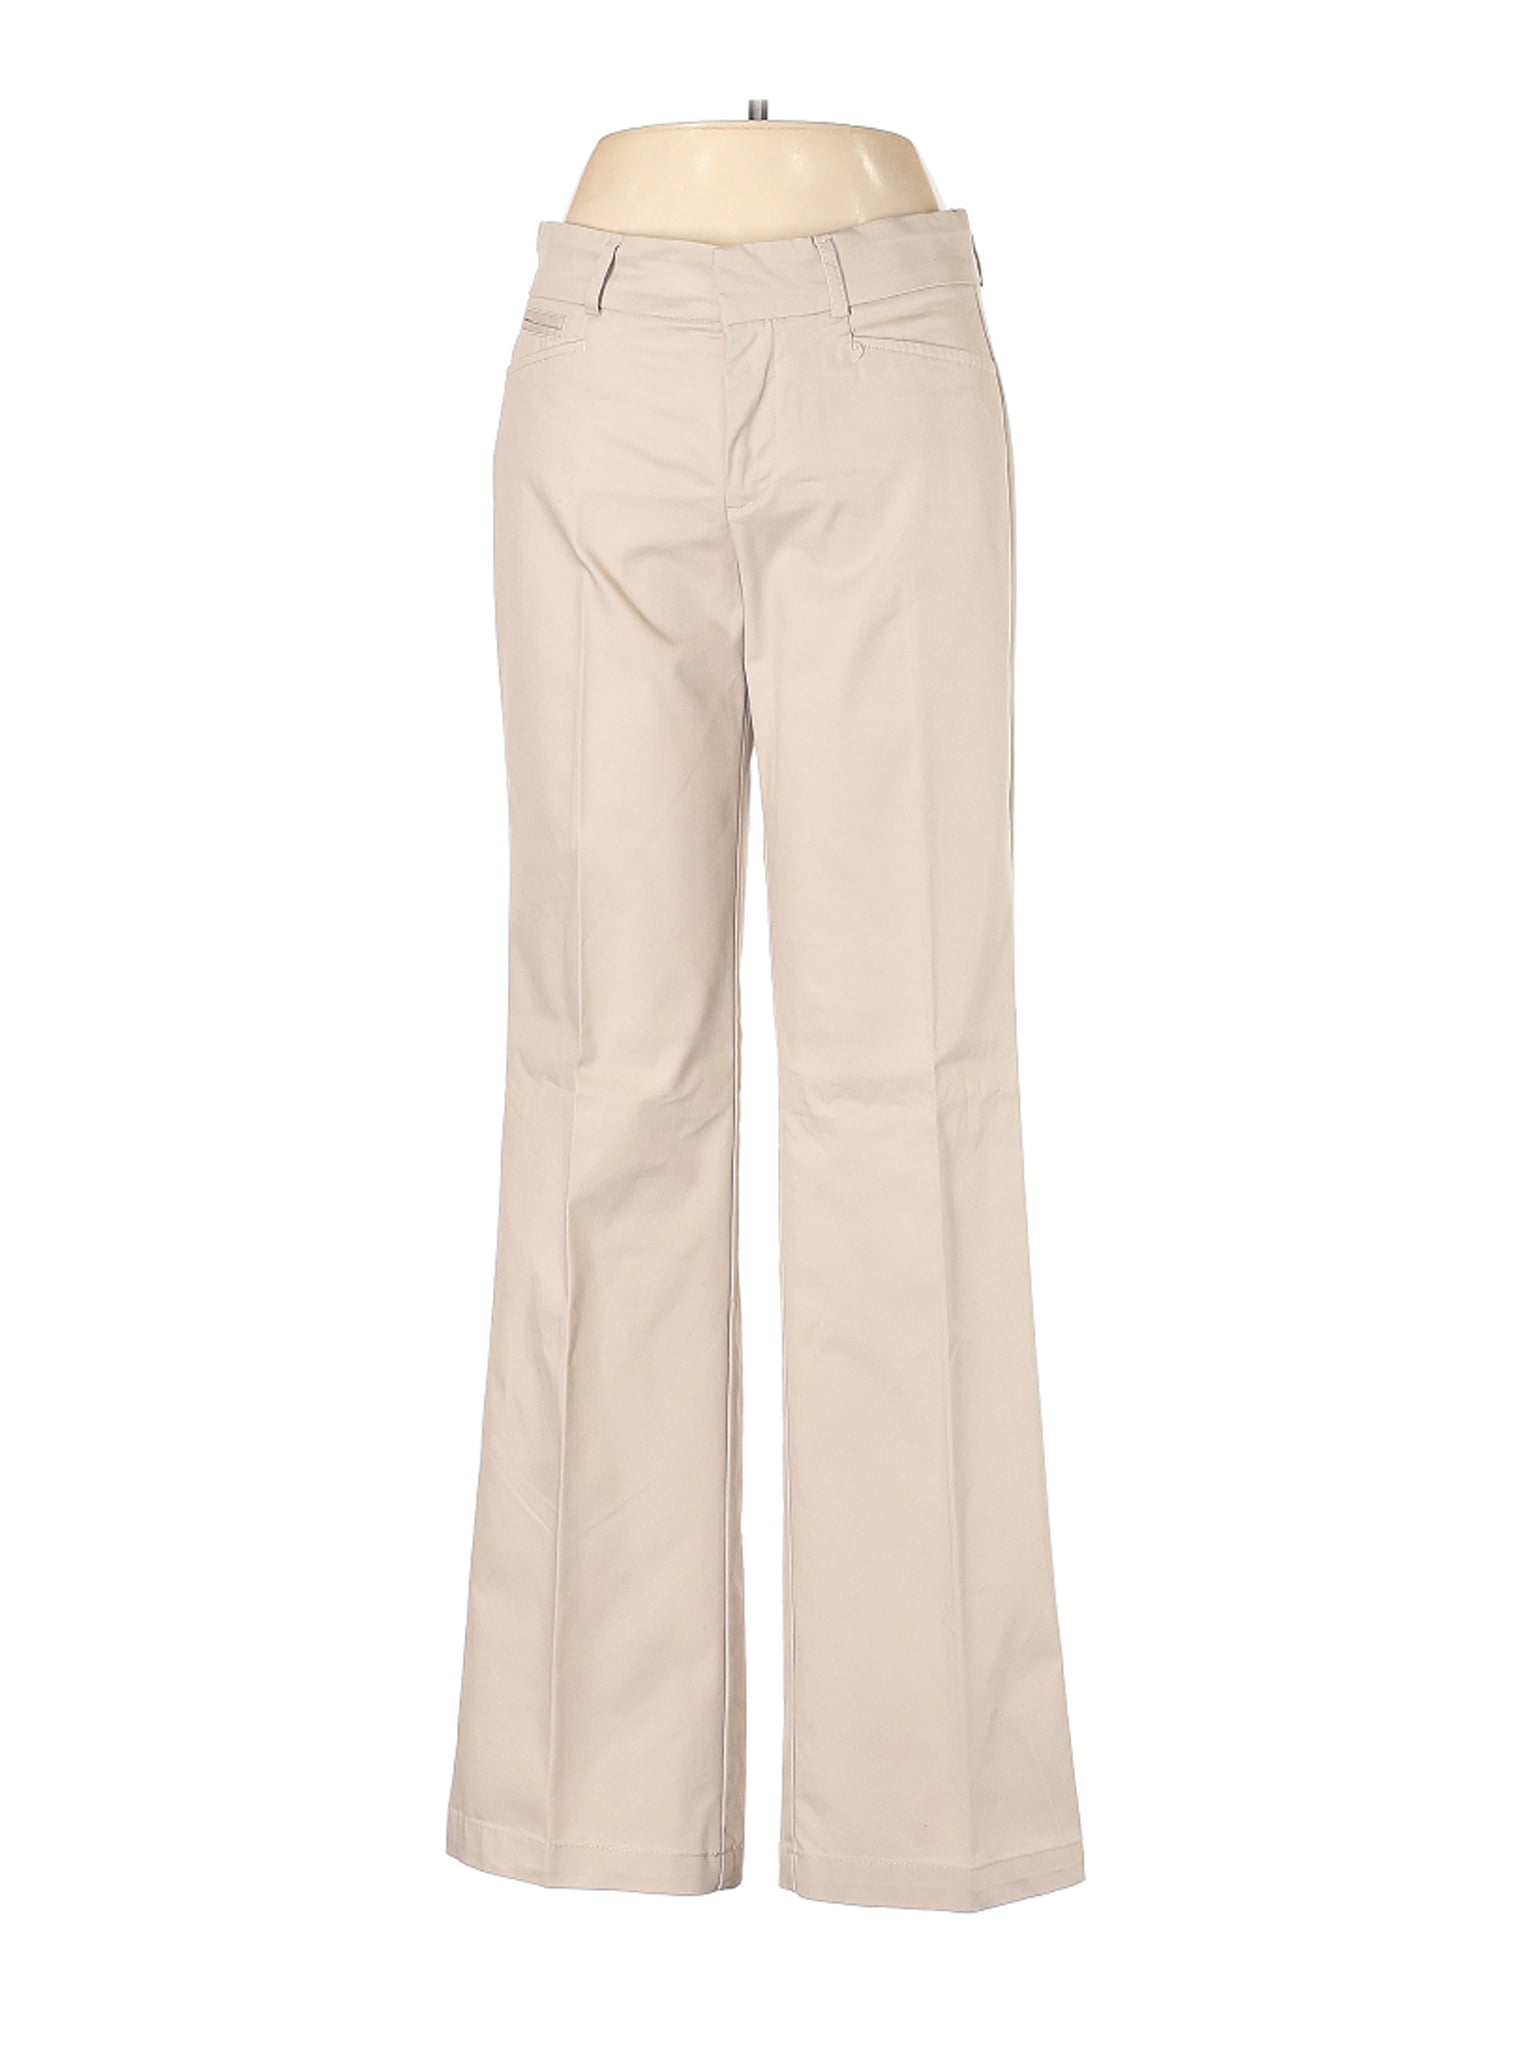 Dockers - Pre-Owned Dockers Women's Size 6 Dress Pants - Walmart.com ...